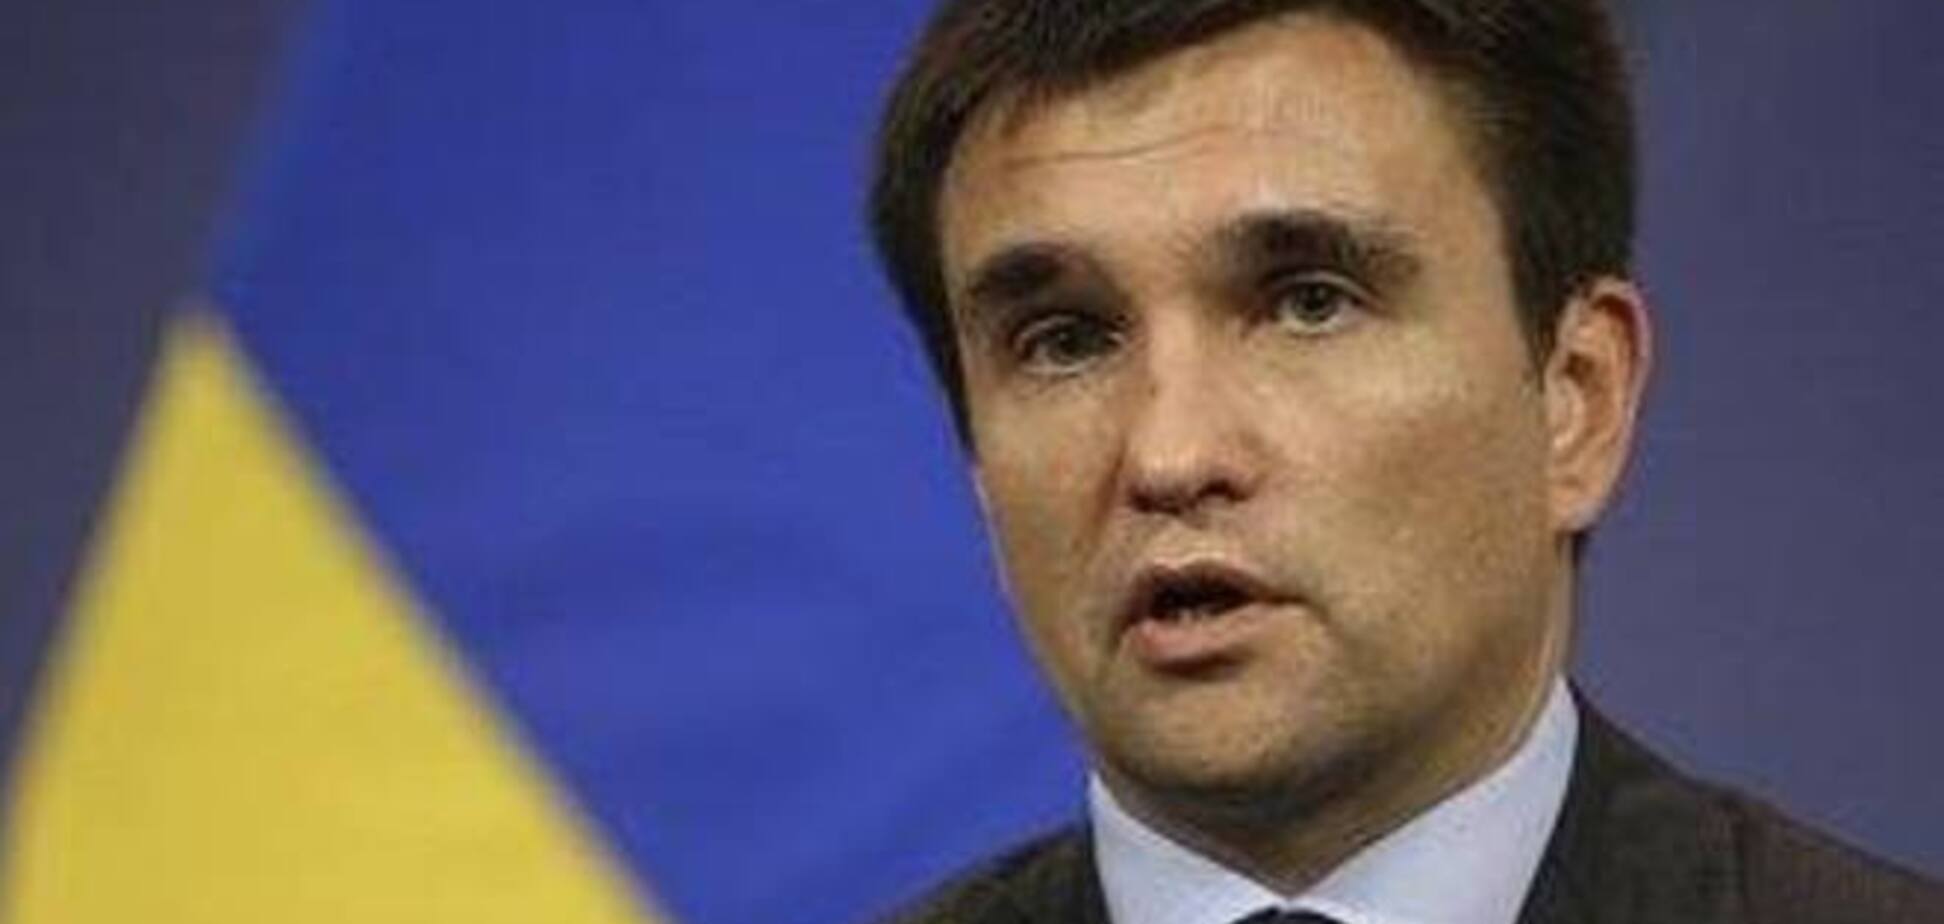 Глава МИД: амнистия на Донбассе не коснется лидеров террористов